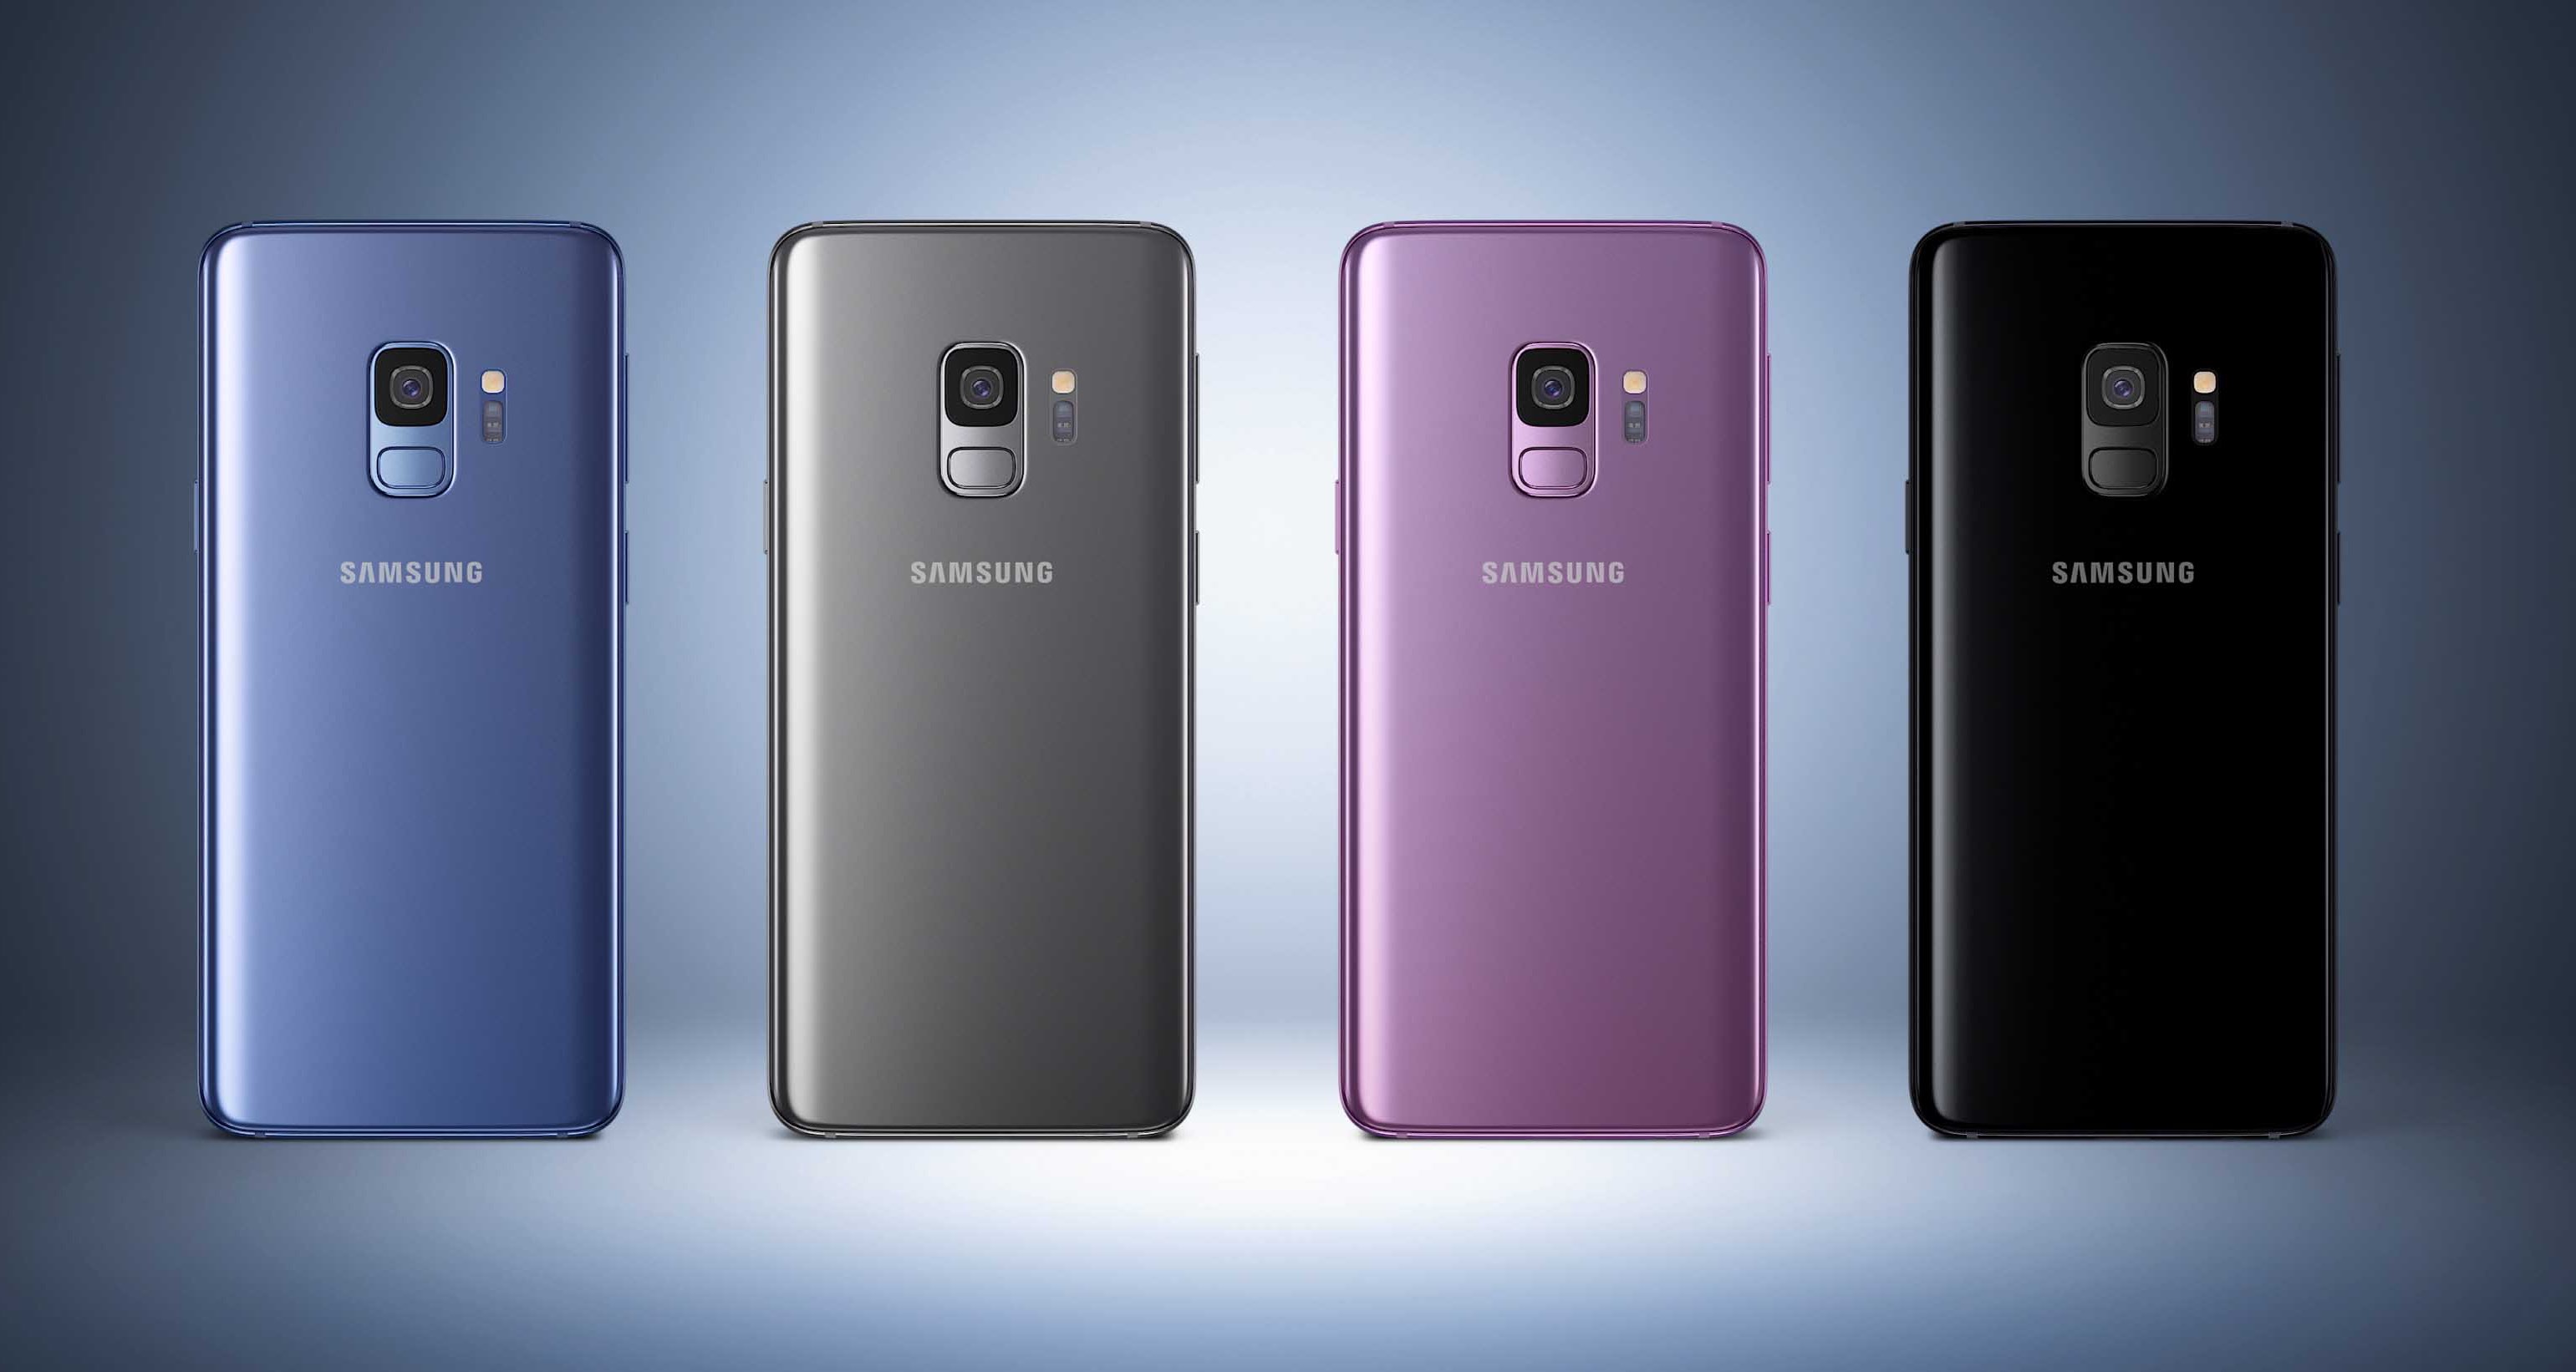 Brillante compartir embotellamiento Samsung Galaxy S9: Cómo usar la cámara superlenta | Computer Hoy